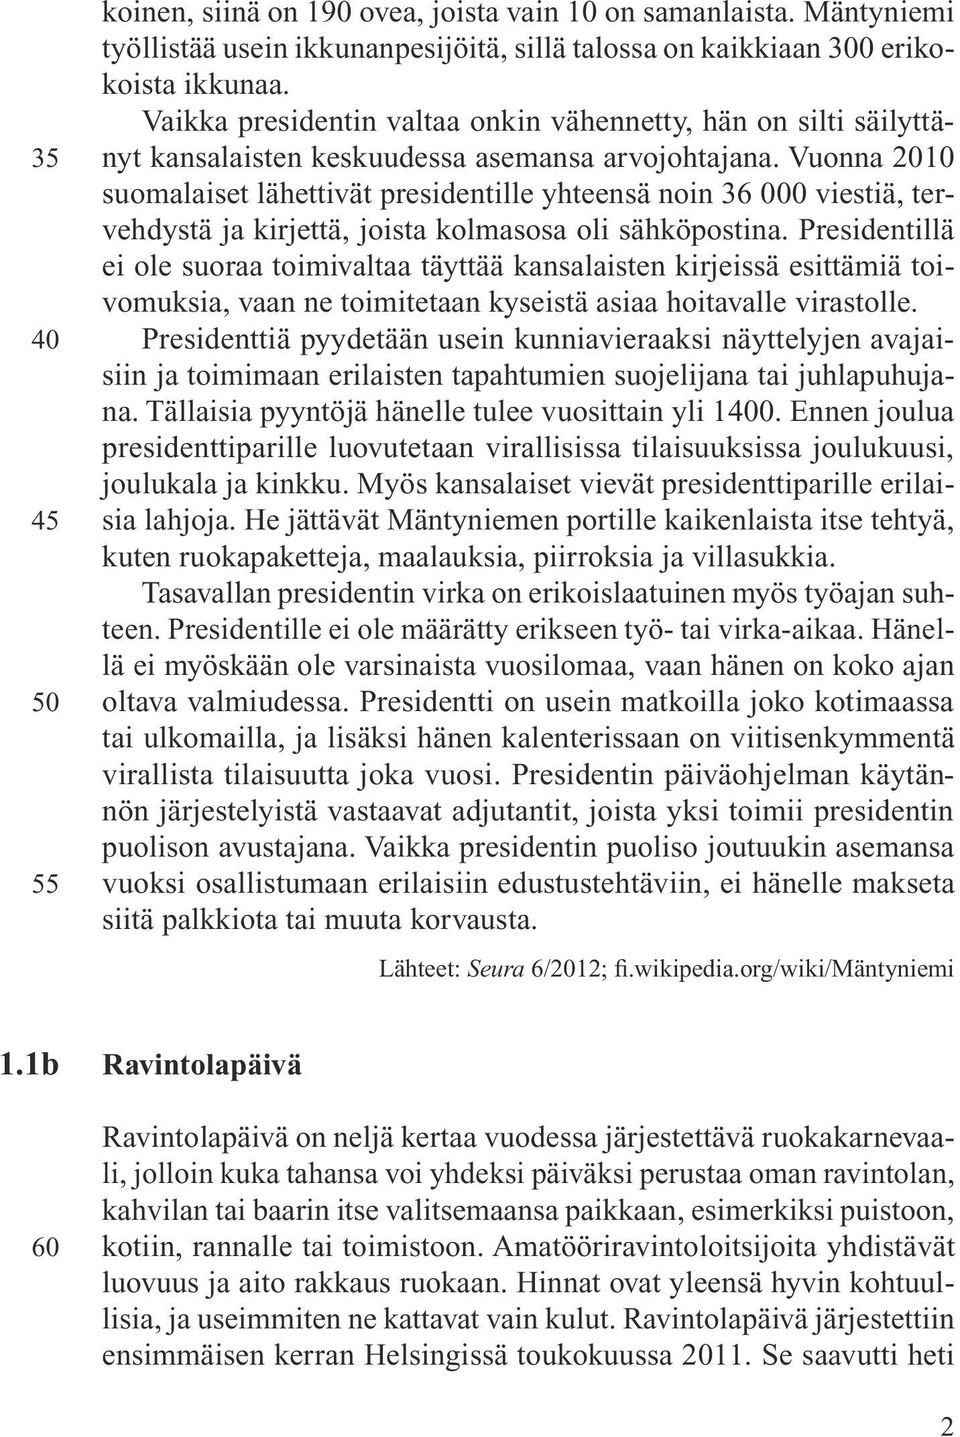 Vuonna 2010 suomalaiset lähettivät presidentille yhteensä noin 36 000 viestiä, tervehdystä ja kirjettä, joista kolmasosa oli sähköpostina.